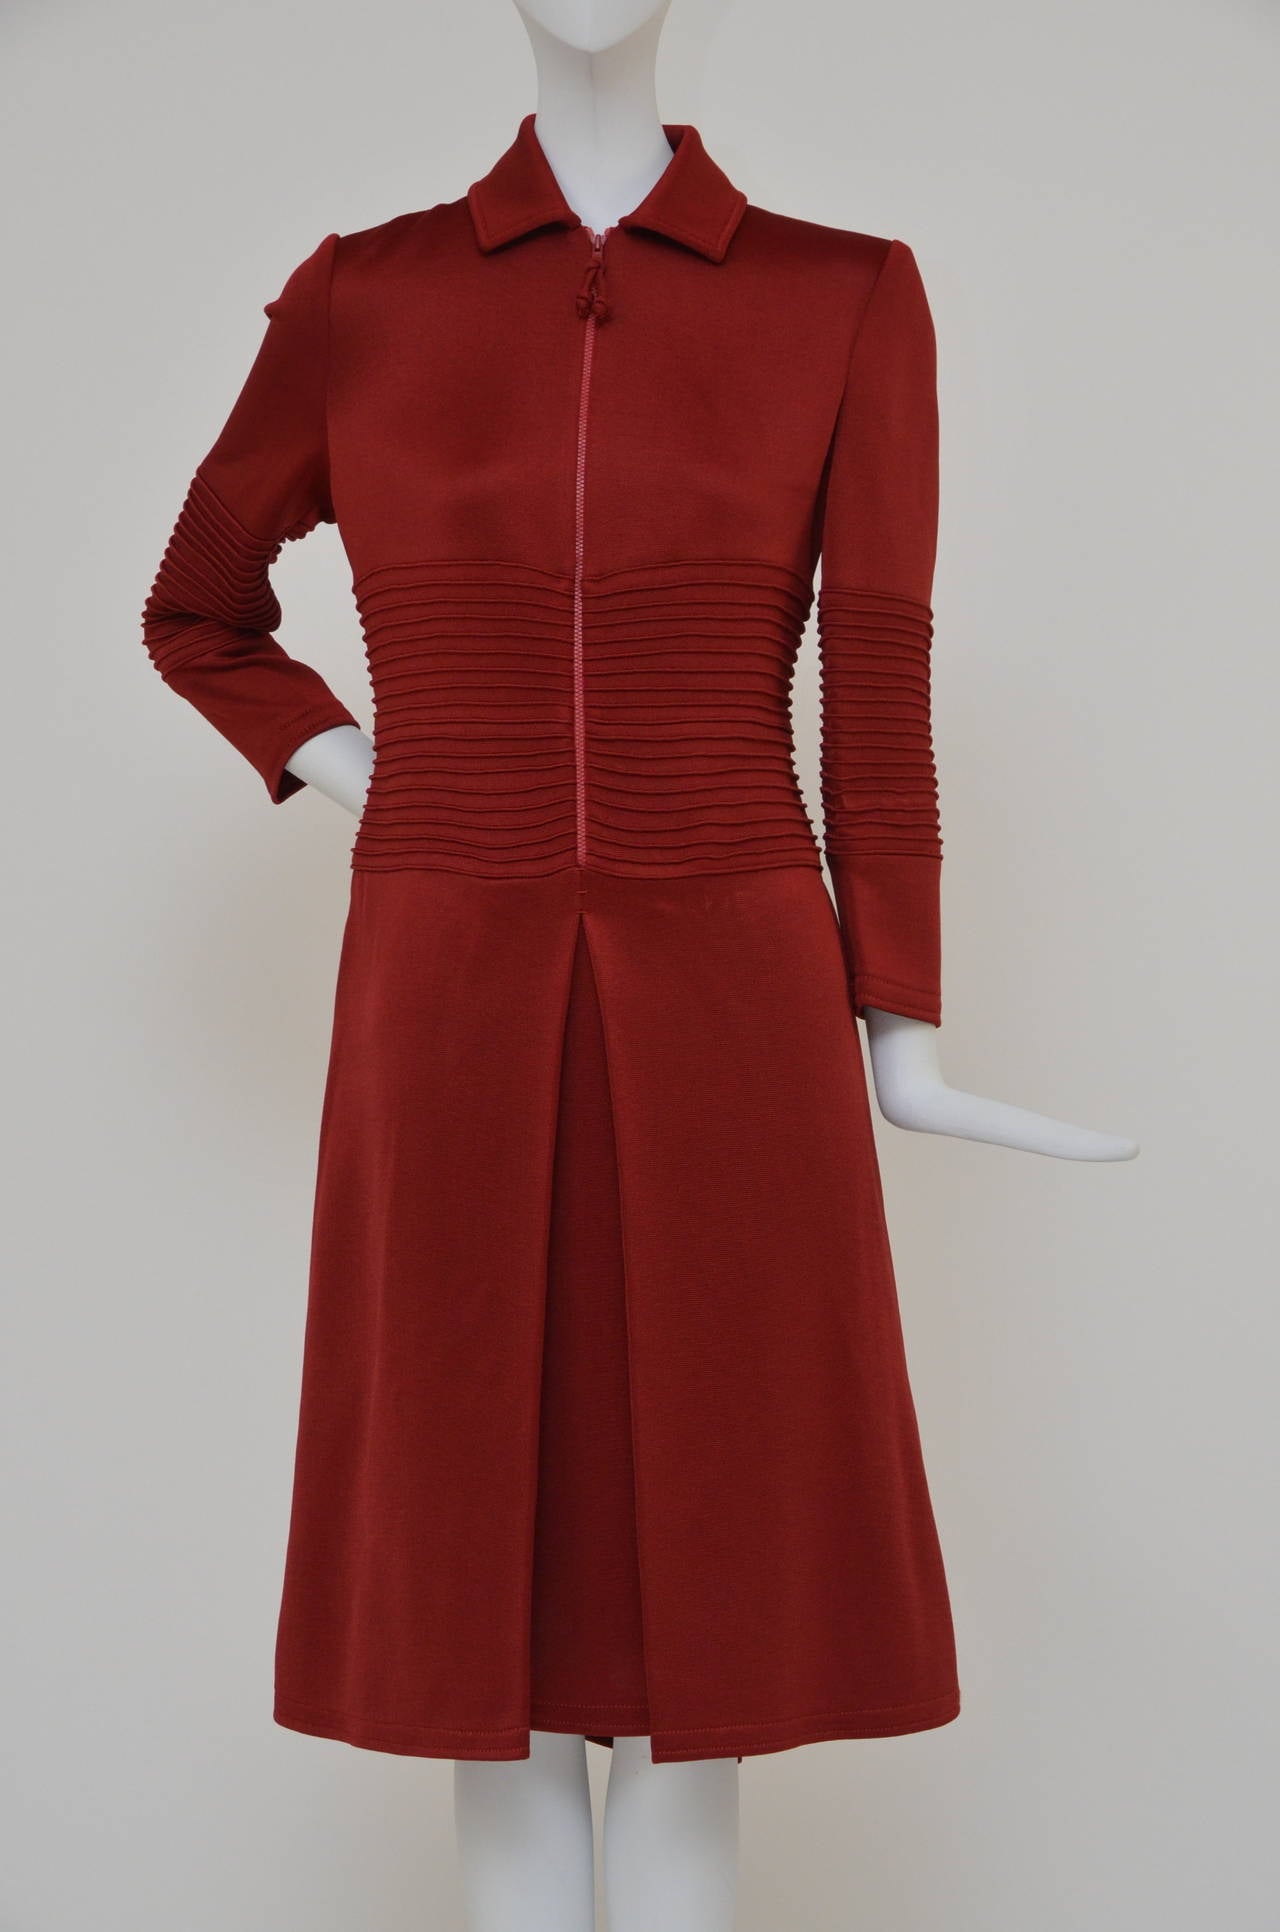 Look 7 von der Chado Ralph Rucci-Laufstegshow Herbst 2011. Dieses unverwechselbare rote Kleid von Chado Ralph Rucci ermöglicht es Ihnen, Ihre Bedeckung von ladylike bis rassig mit einem cleveren Frontreißverschluss zu kontrollieren. Für ein